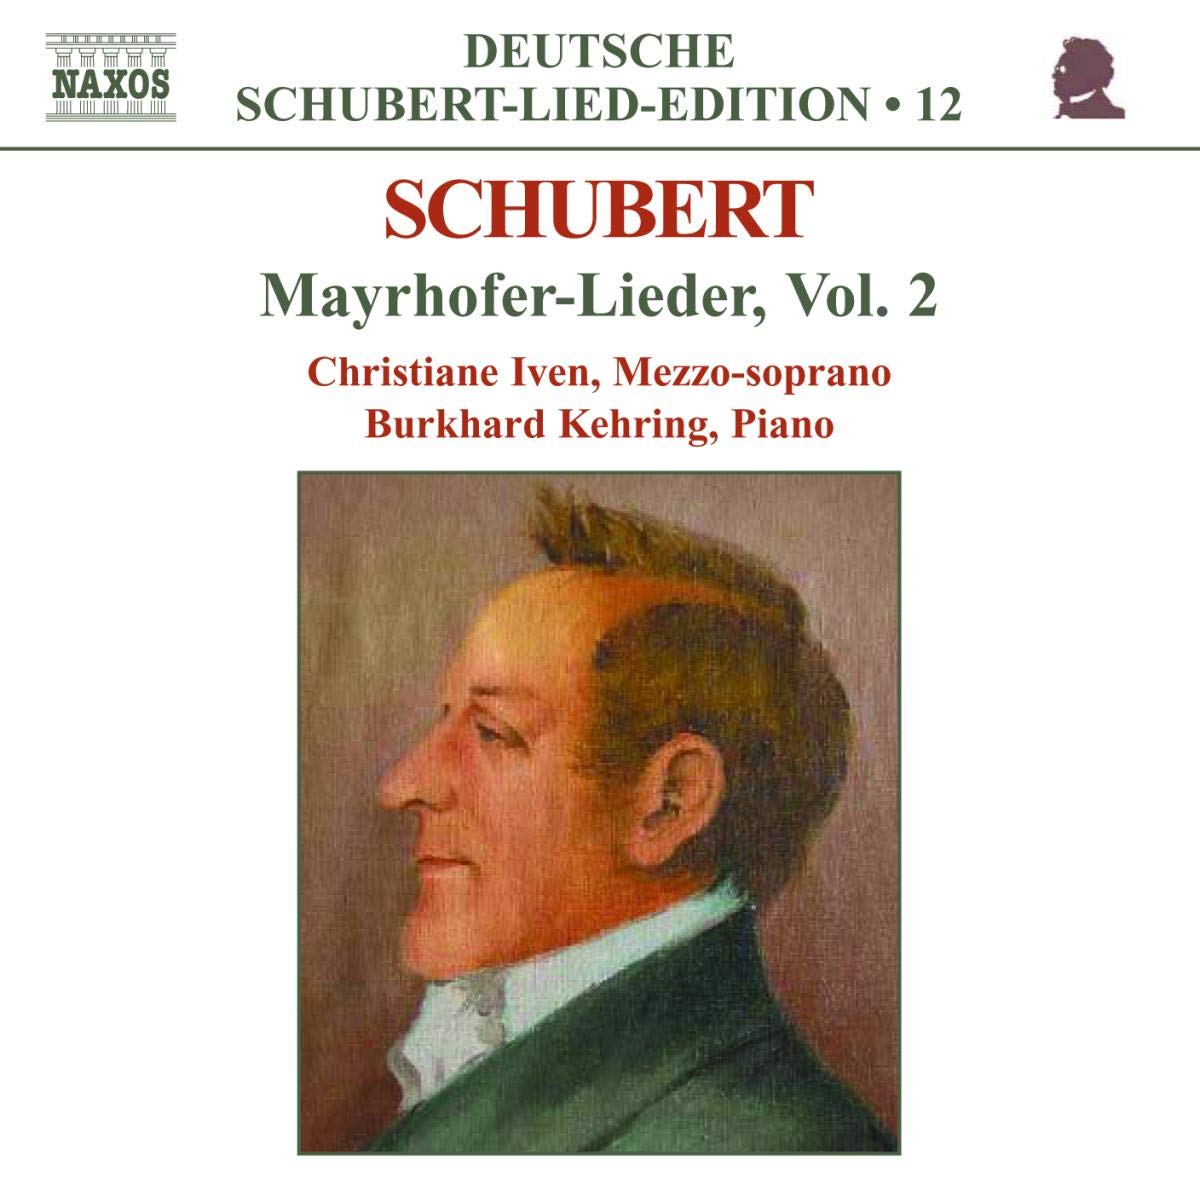 SCHUBERT: Mayrhofer-Lieder vol. 2